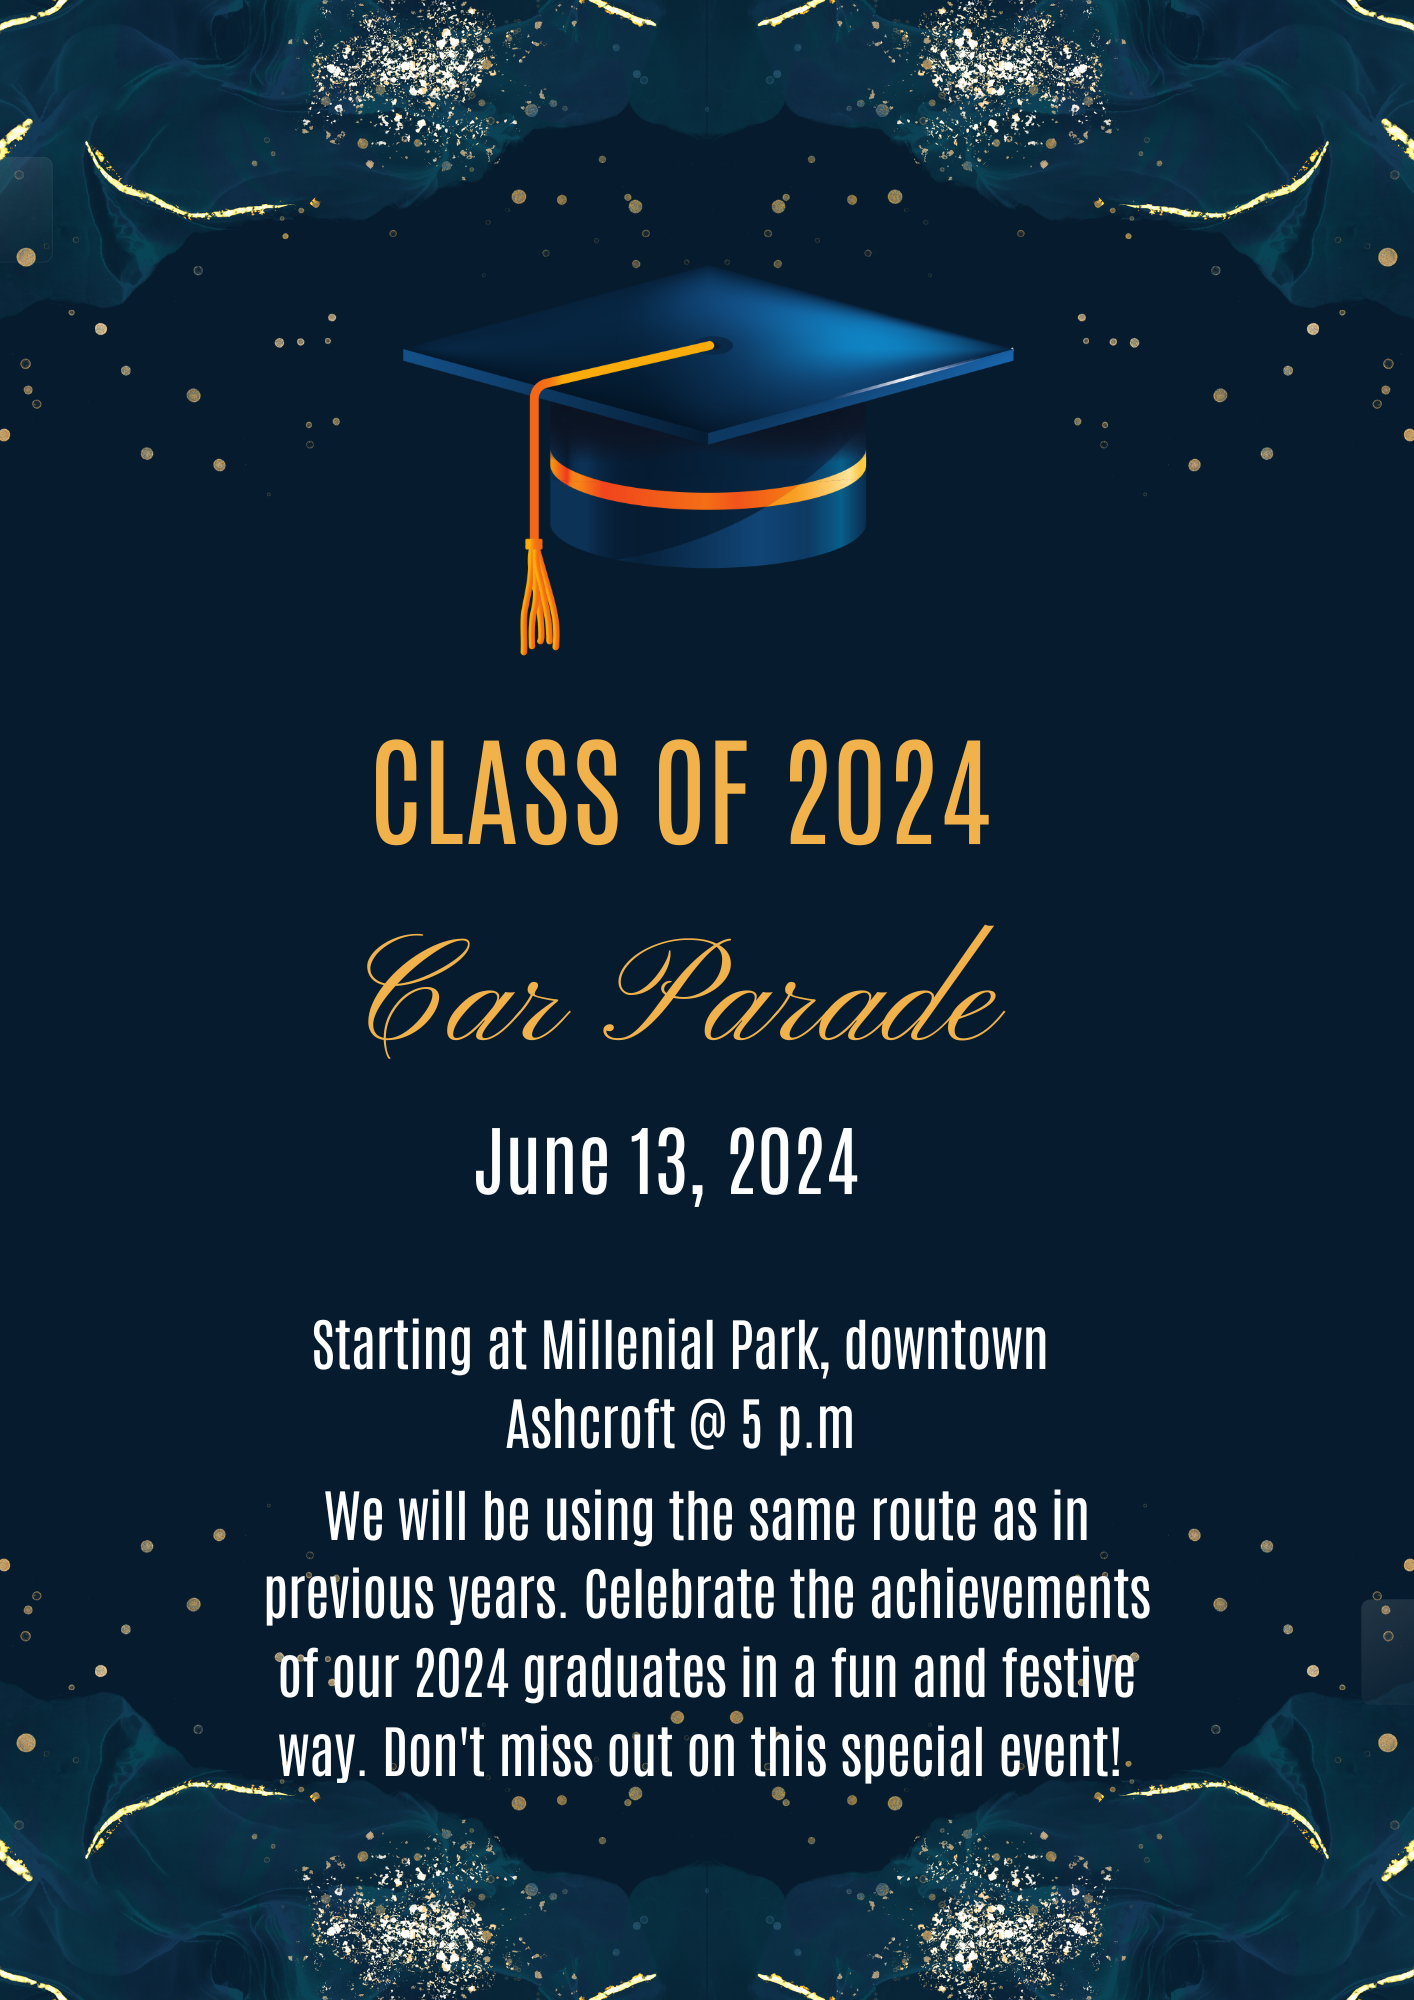 Class of 2024 Car Parade